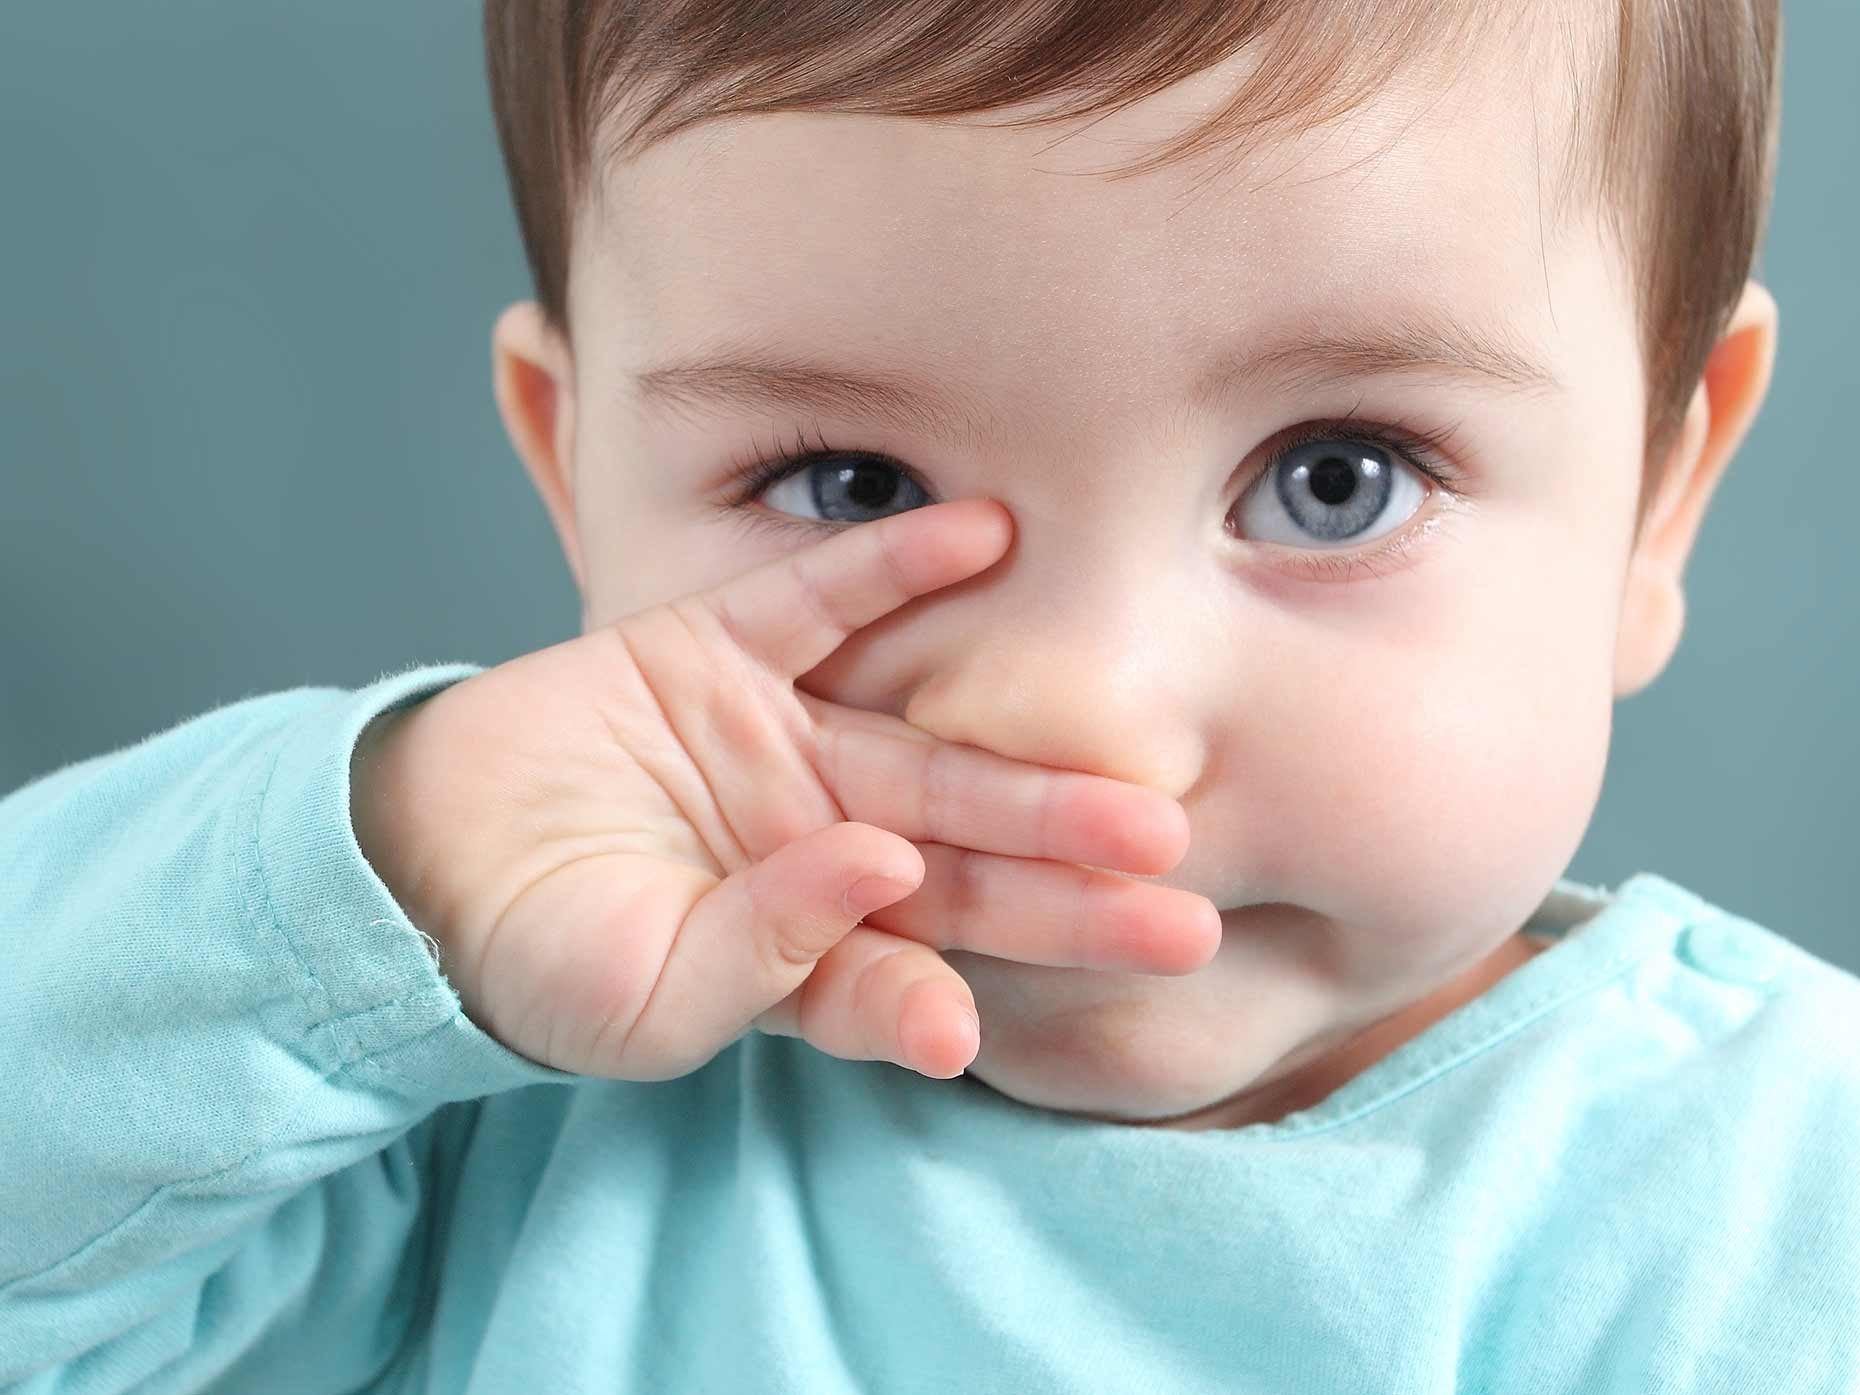 Come scegliere l'aspiratore nasale - Amico Pediatra